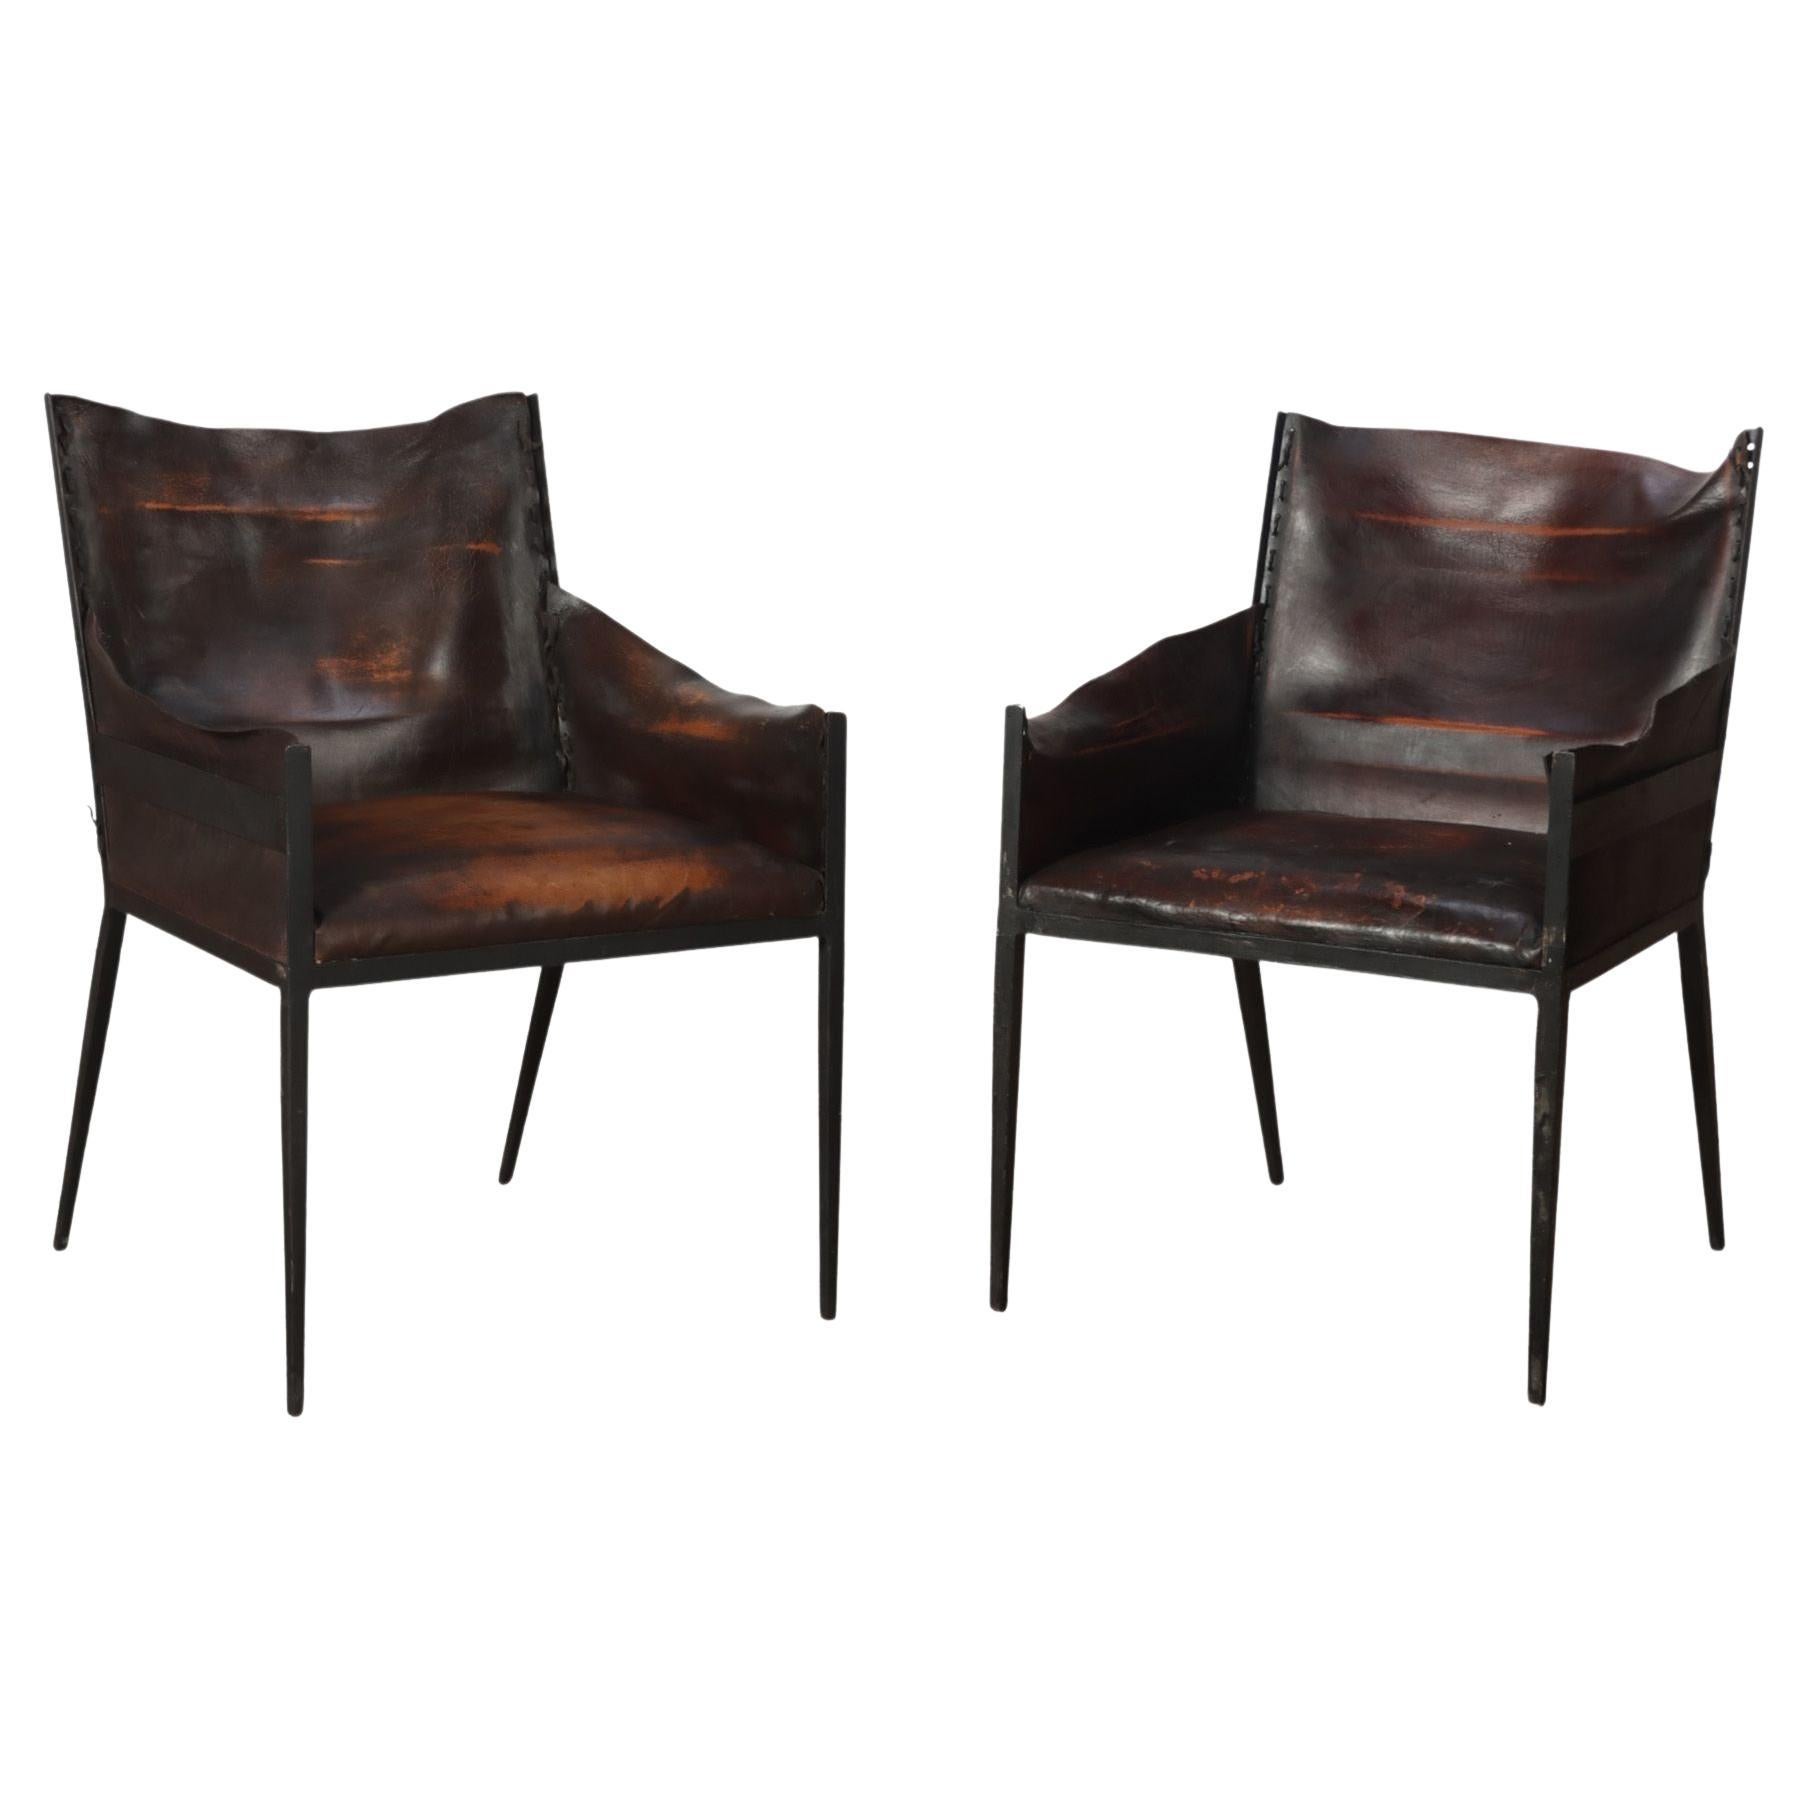 Paar Vintage-Sessel aus Eisen und Leder, zeitgenössisch